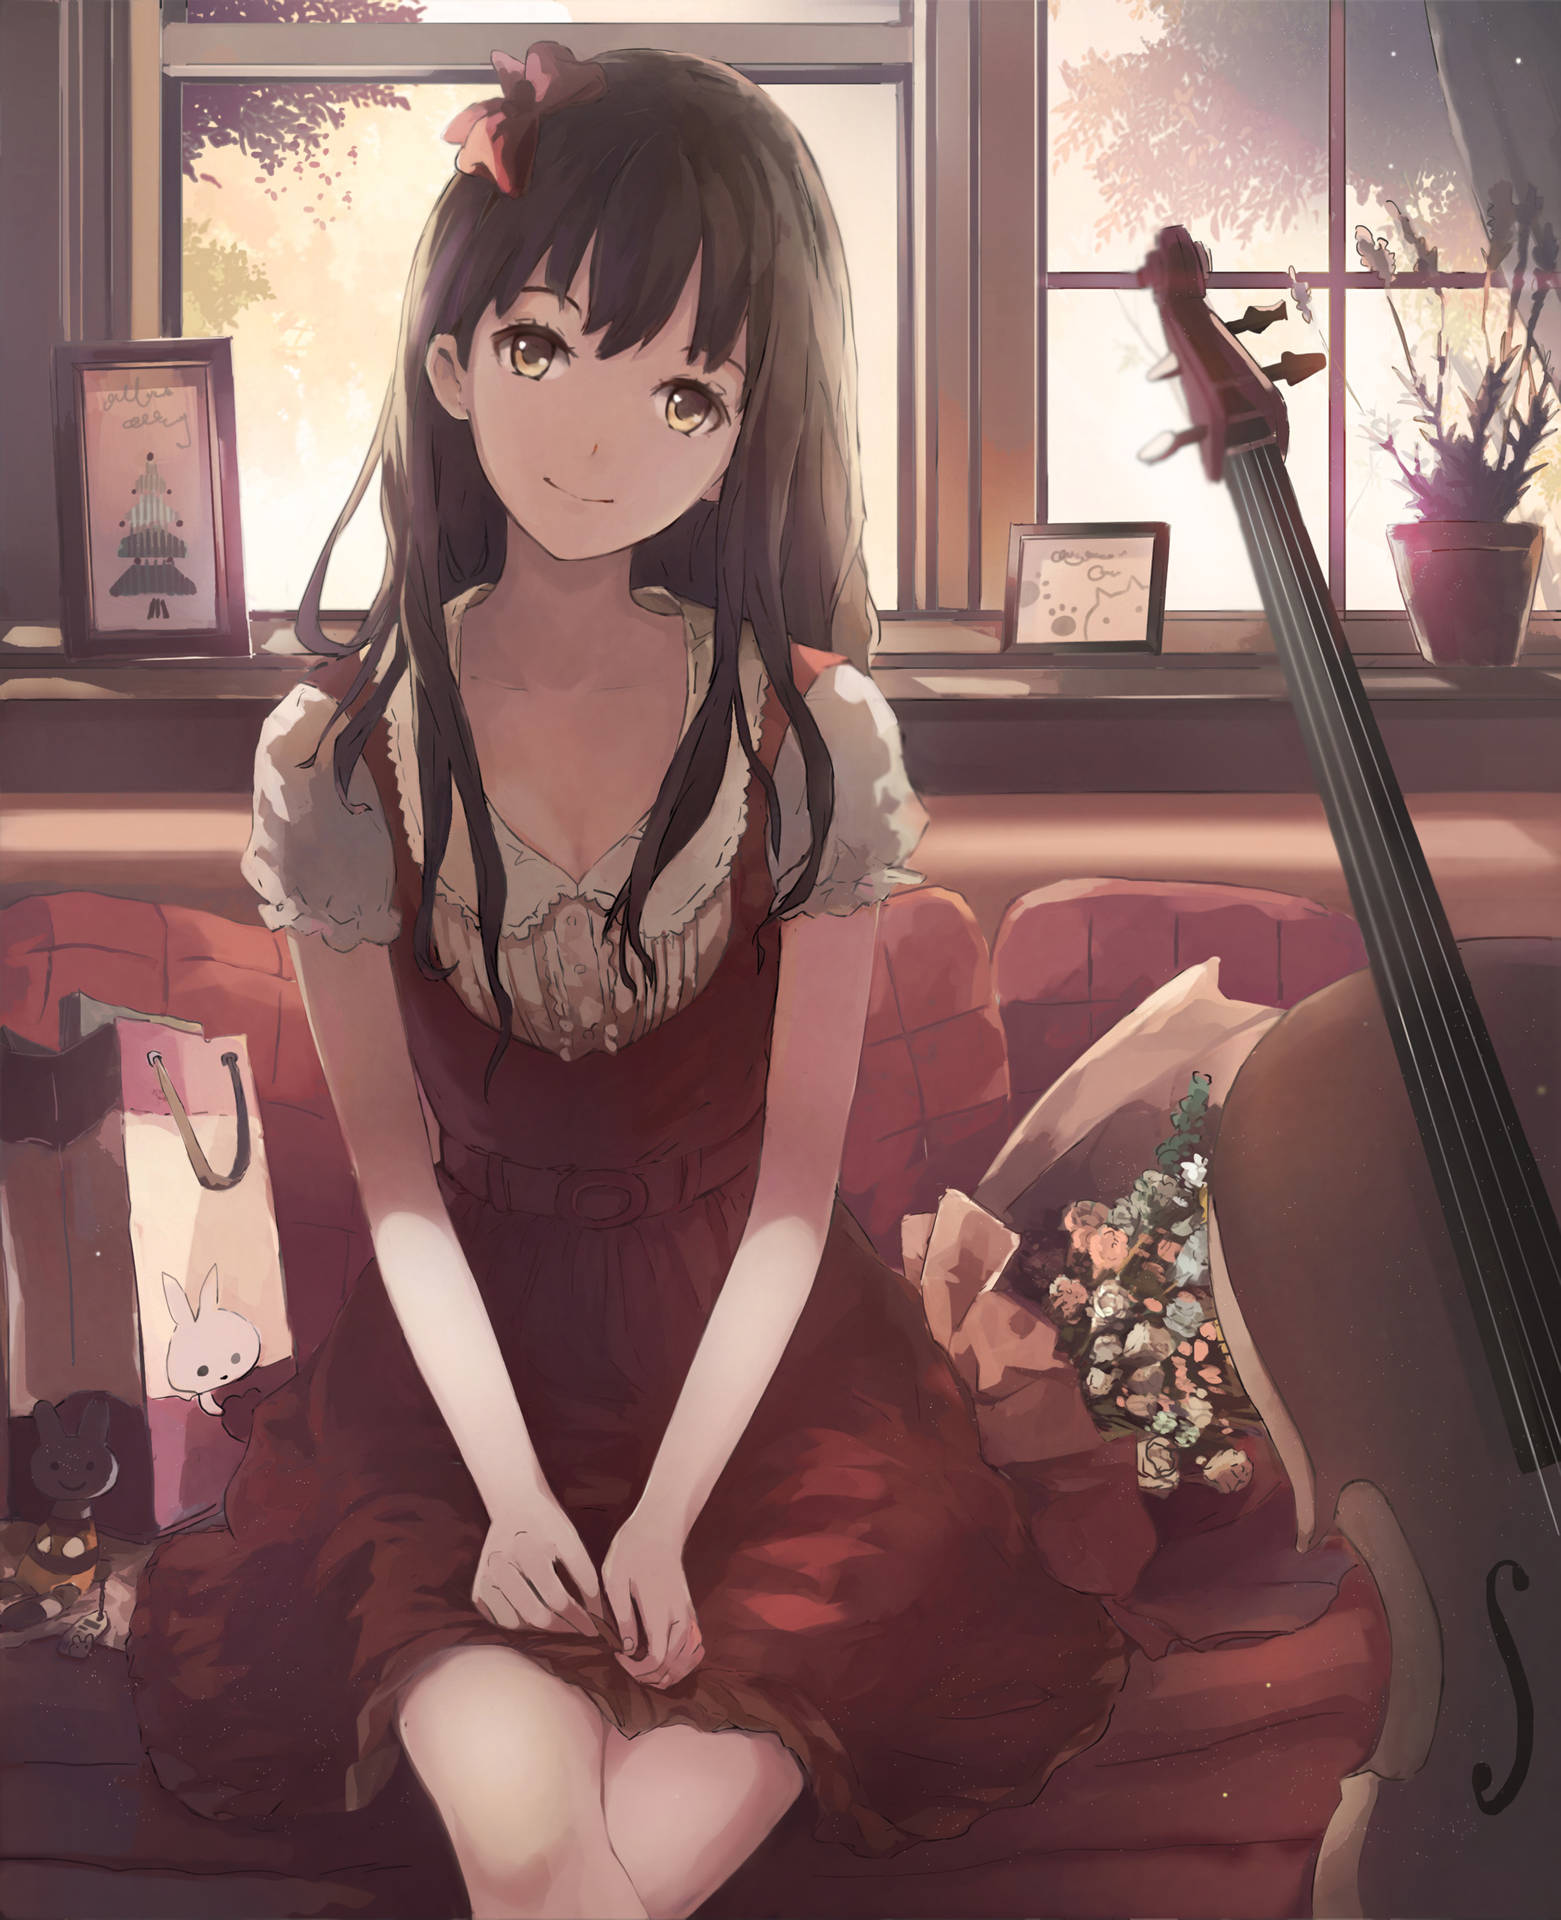 Cute Anime Girl With Cello